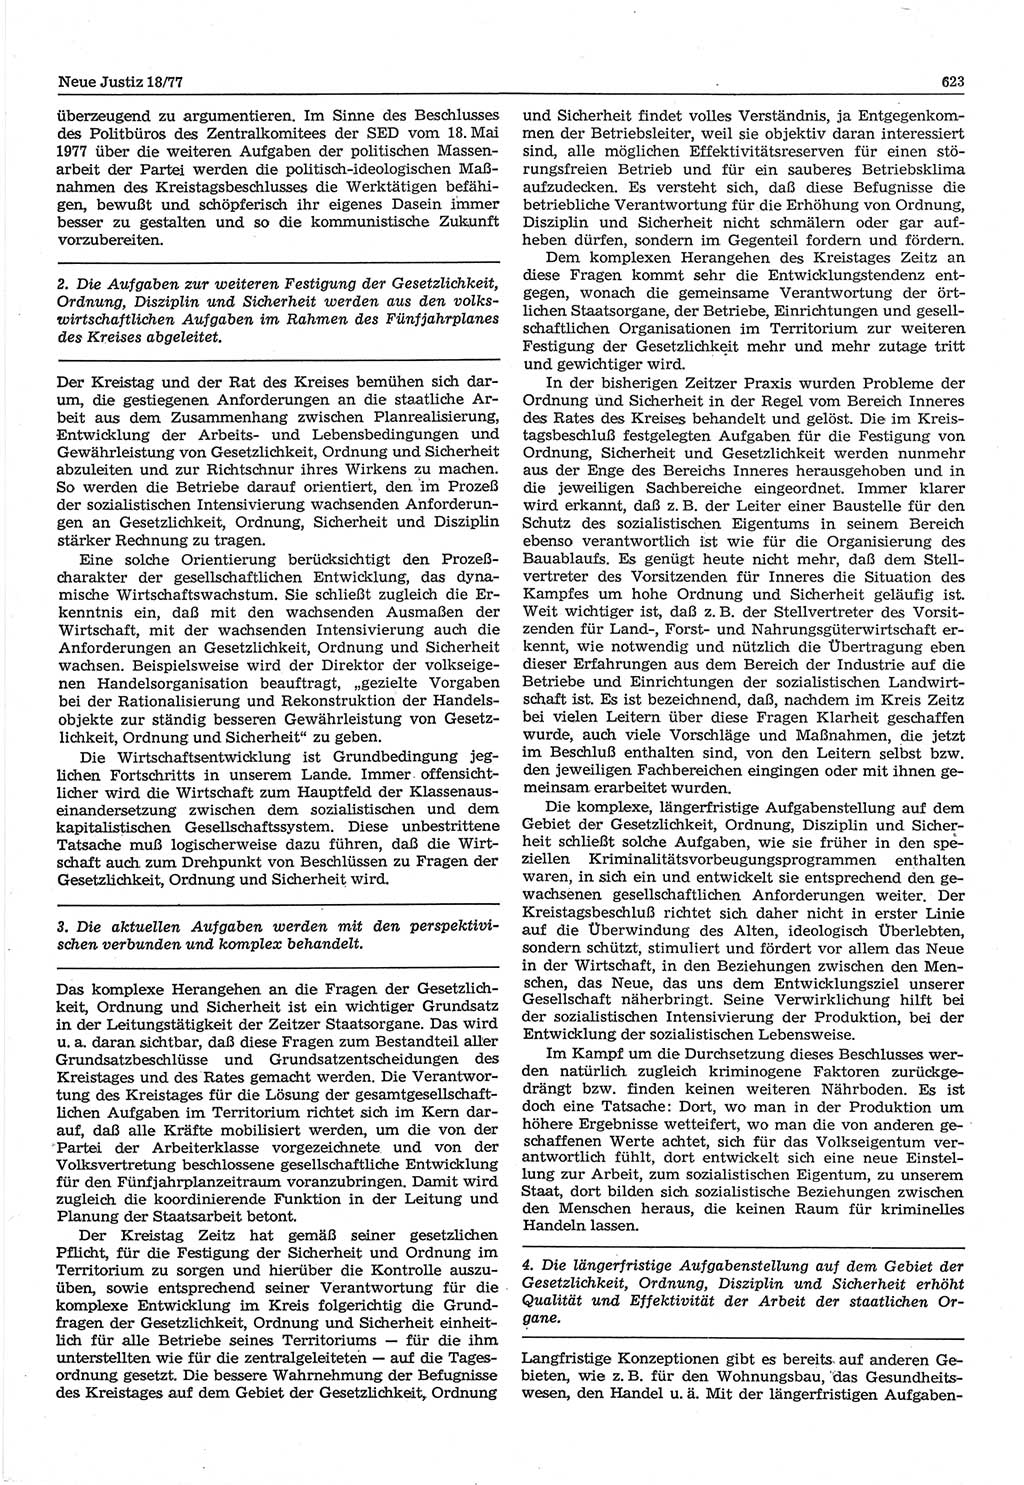 Neue Justiz (NJ), Zeitschrift für Recht und Rechtswissenschaft-Zeitschrift, sozialistisches Recht und Gesetzlichkeit, 31. Jahrgang 1977, Seite 623 (NJ DDR 1977, S. 623)